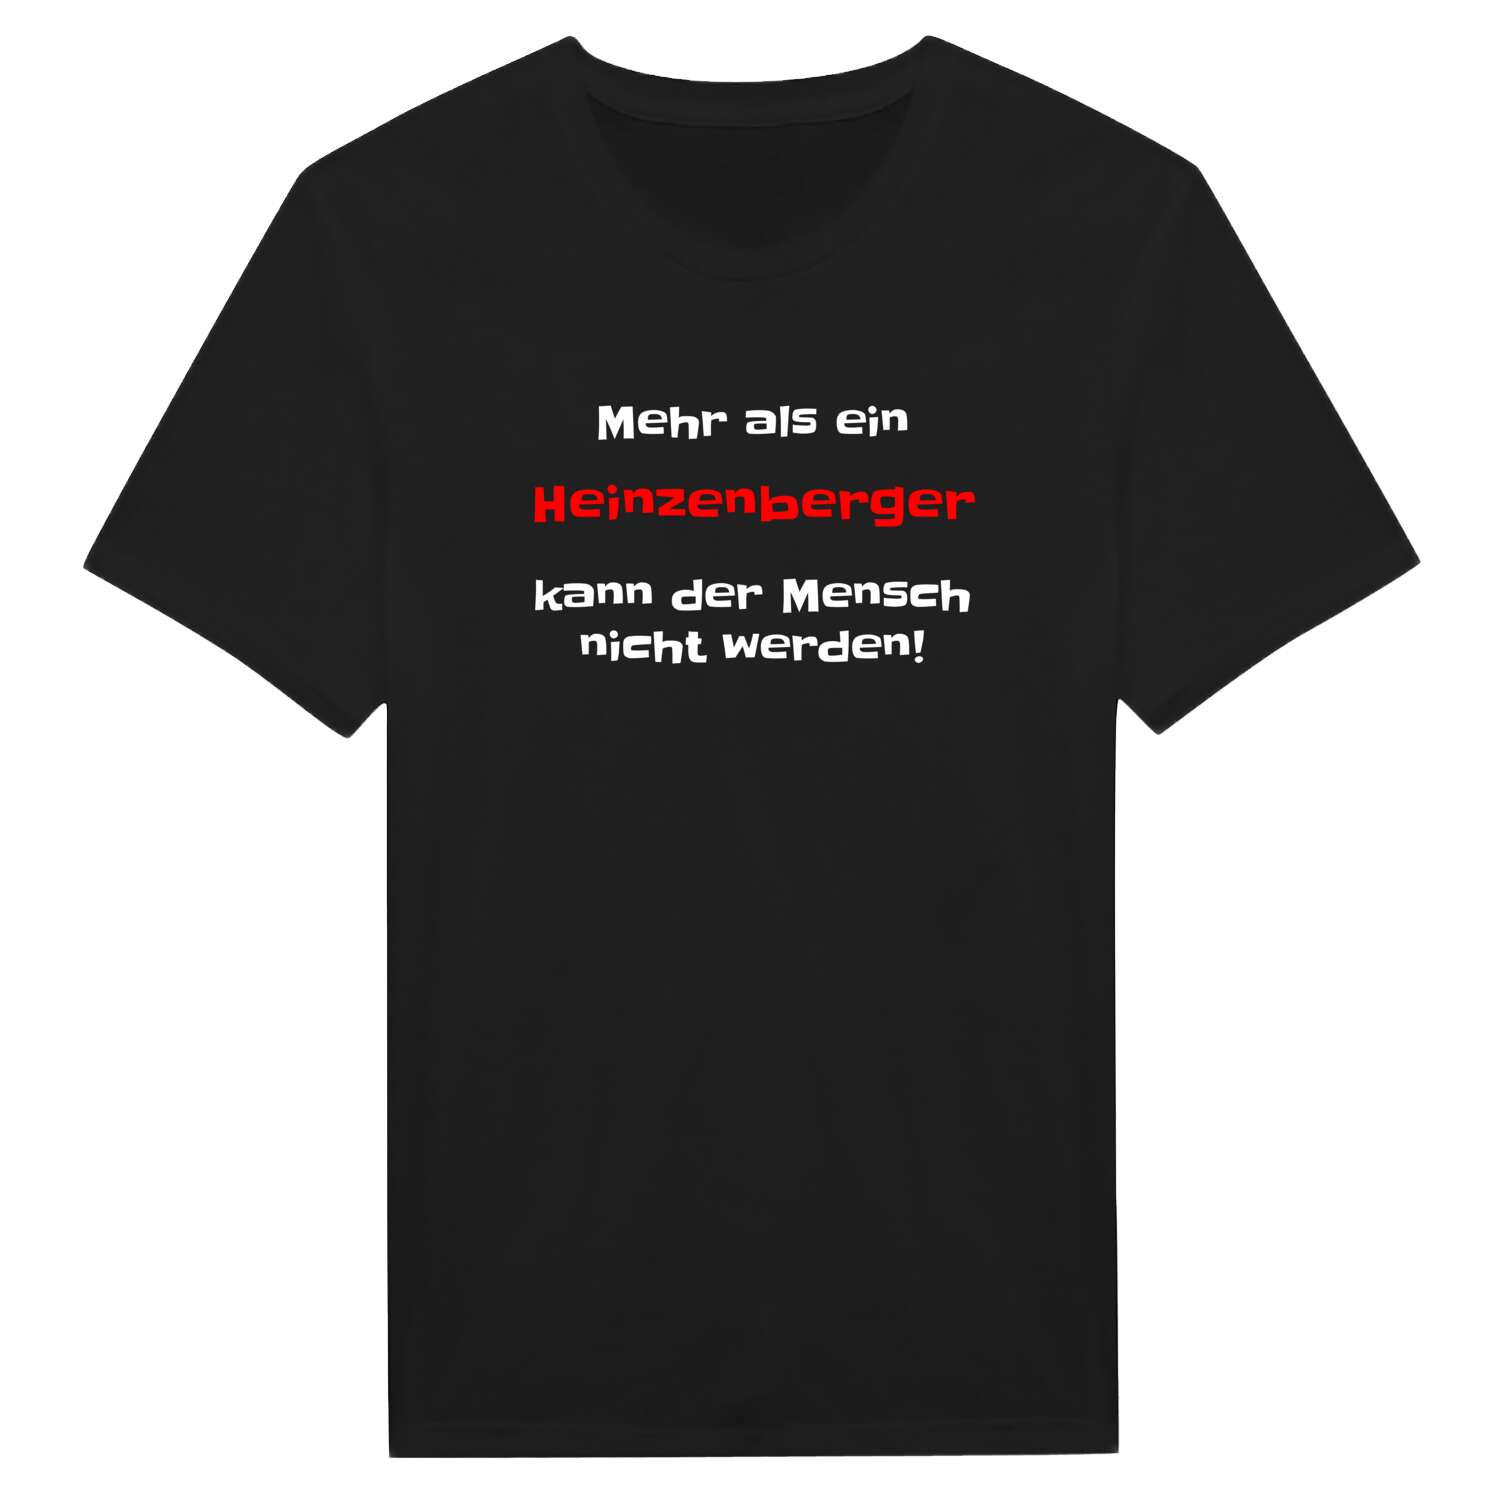 Heinzenberg T-Shirt »Mehr als ein«